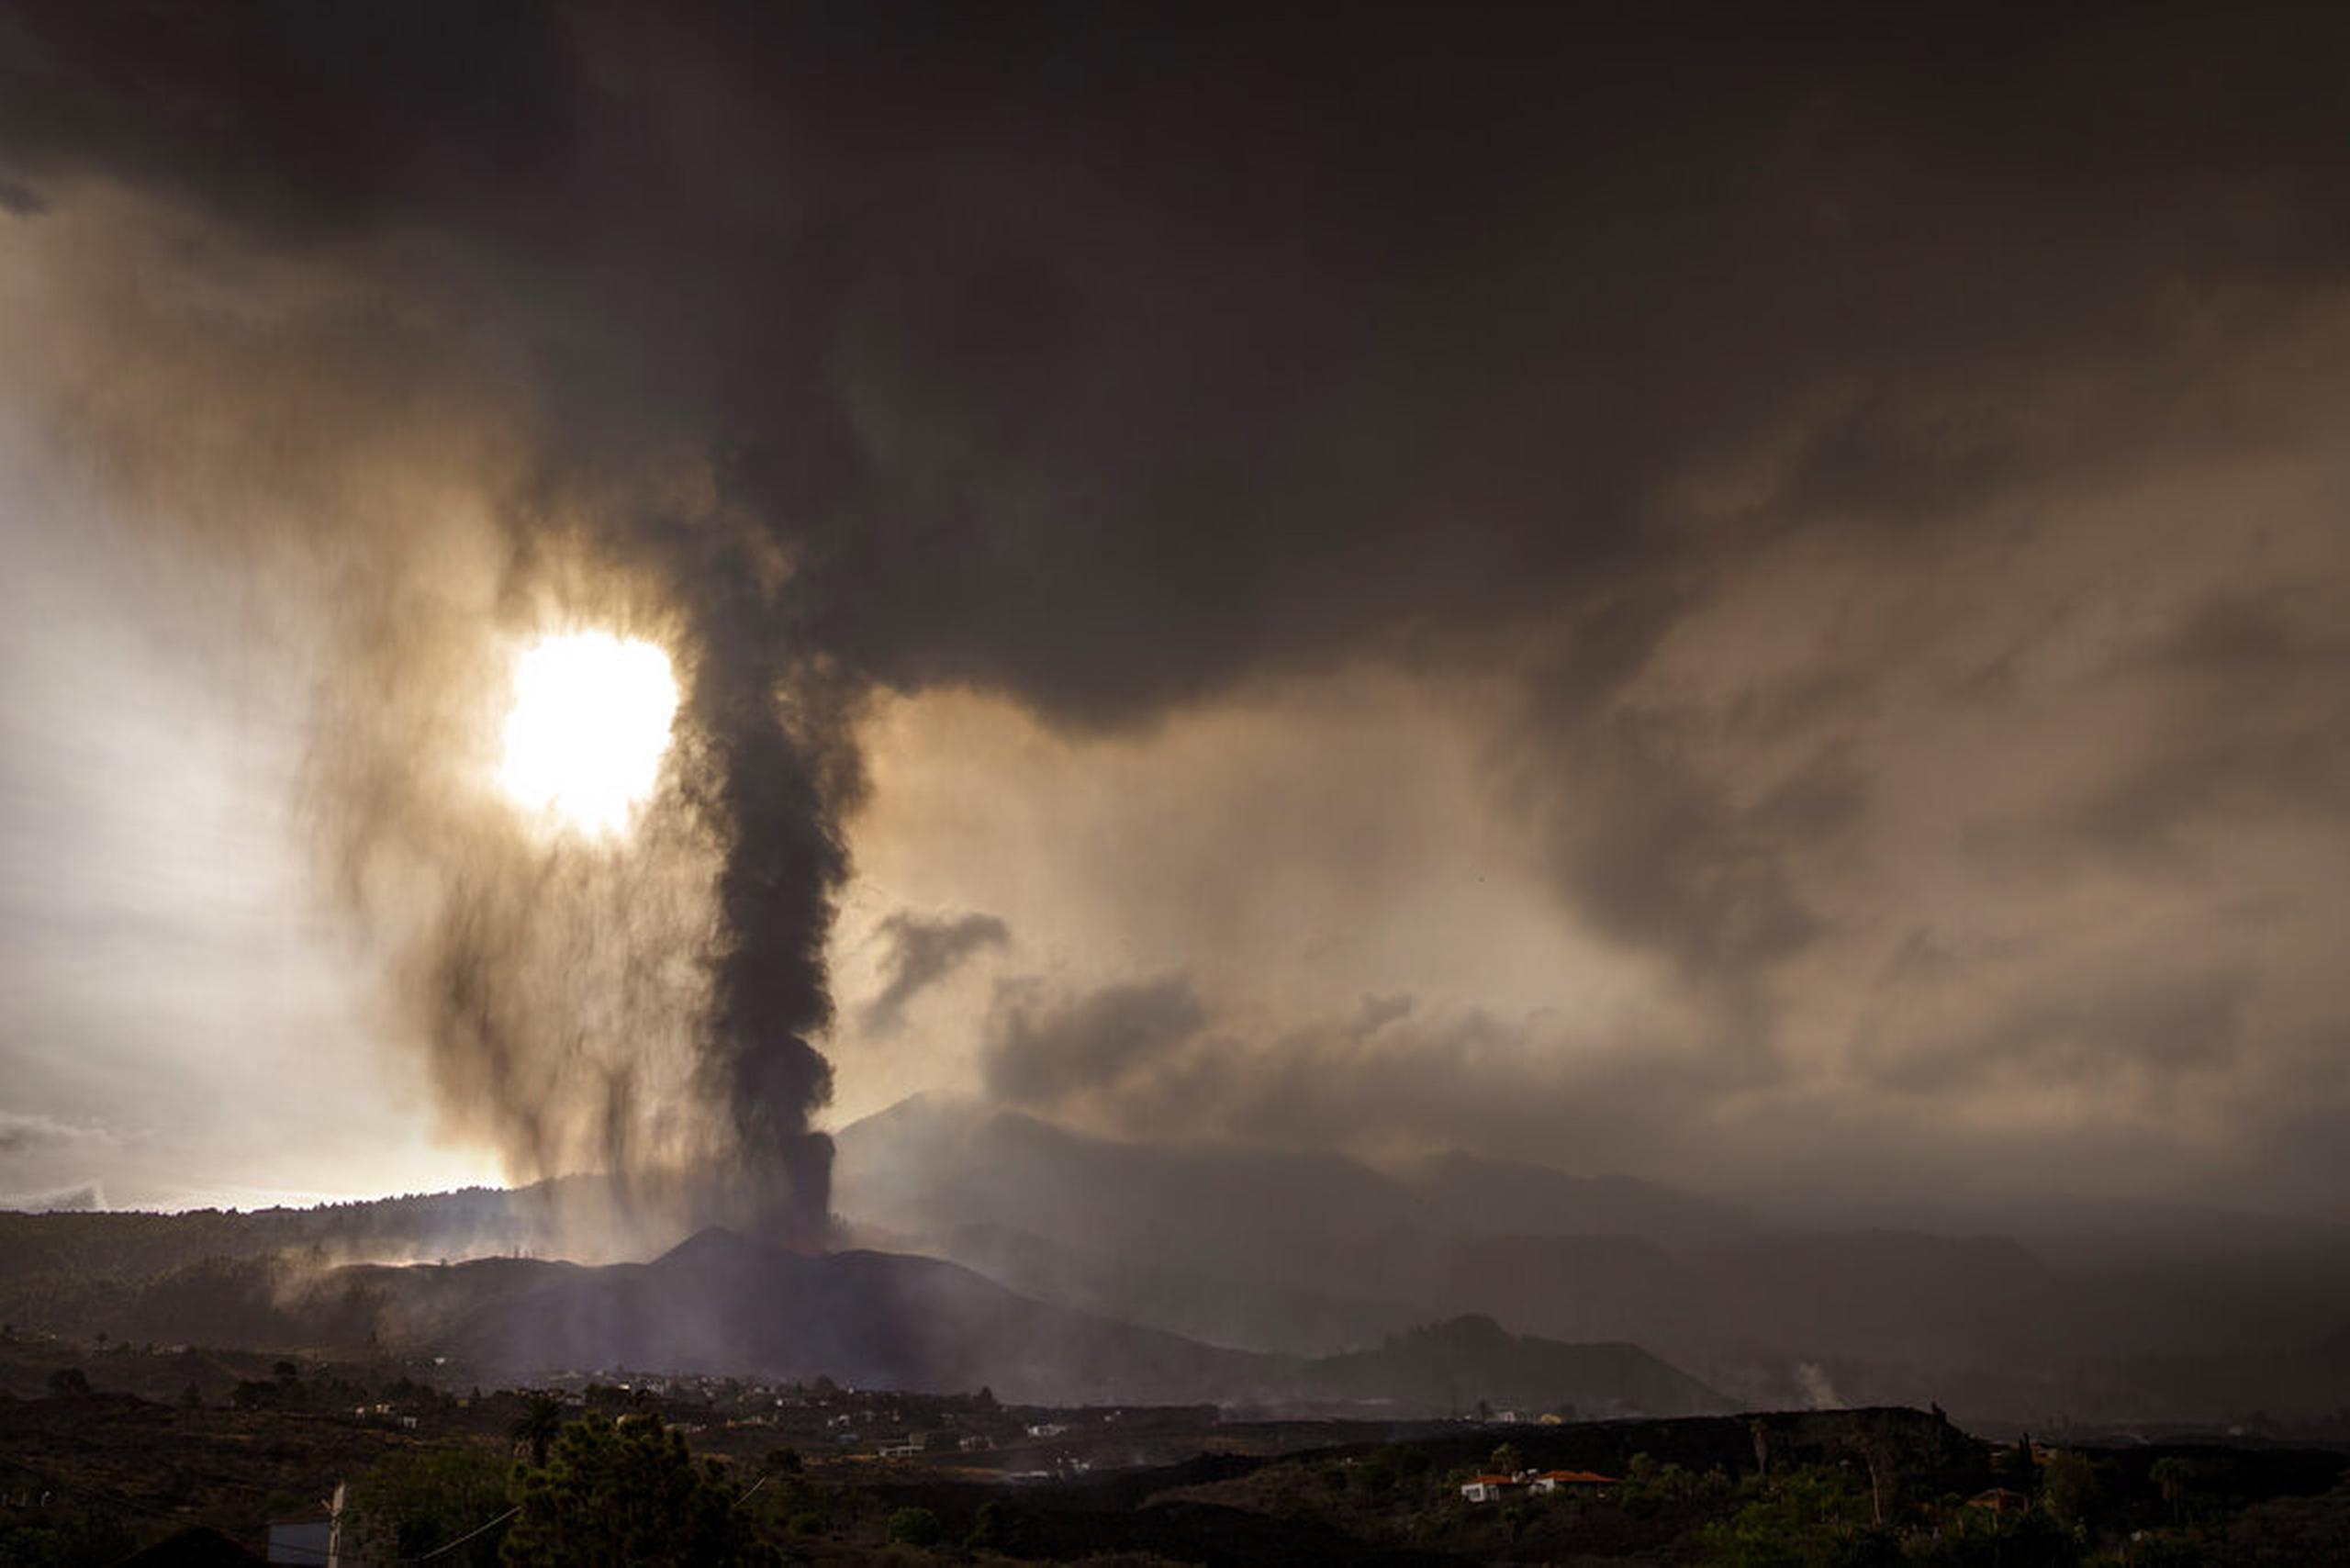 Vista de la erupción volcánica en la isla de La Palma, España, el 22 de septiembre de 2021.